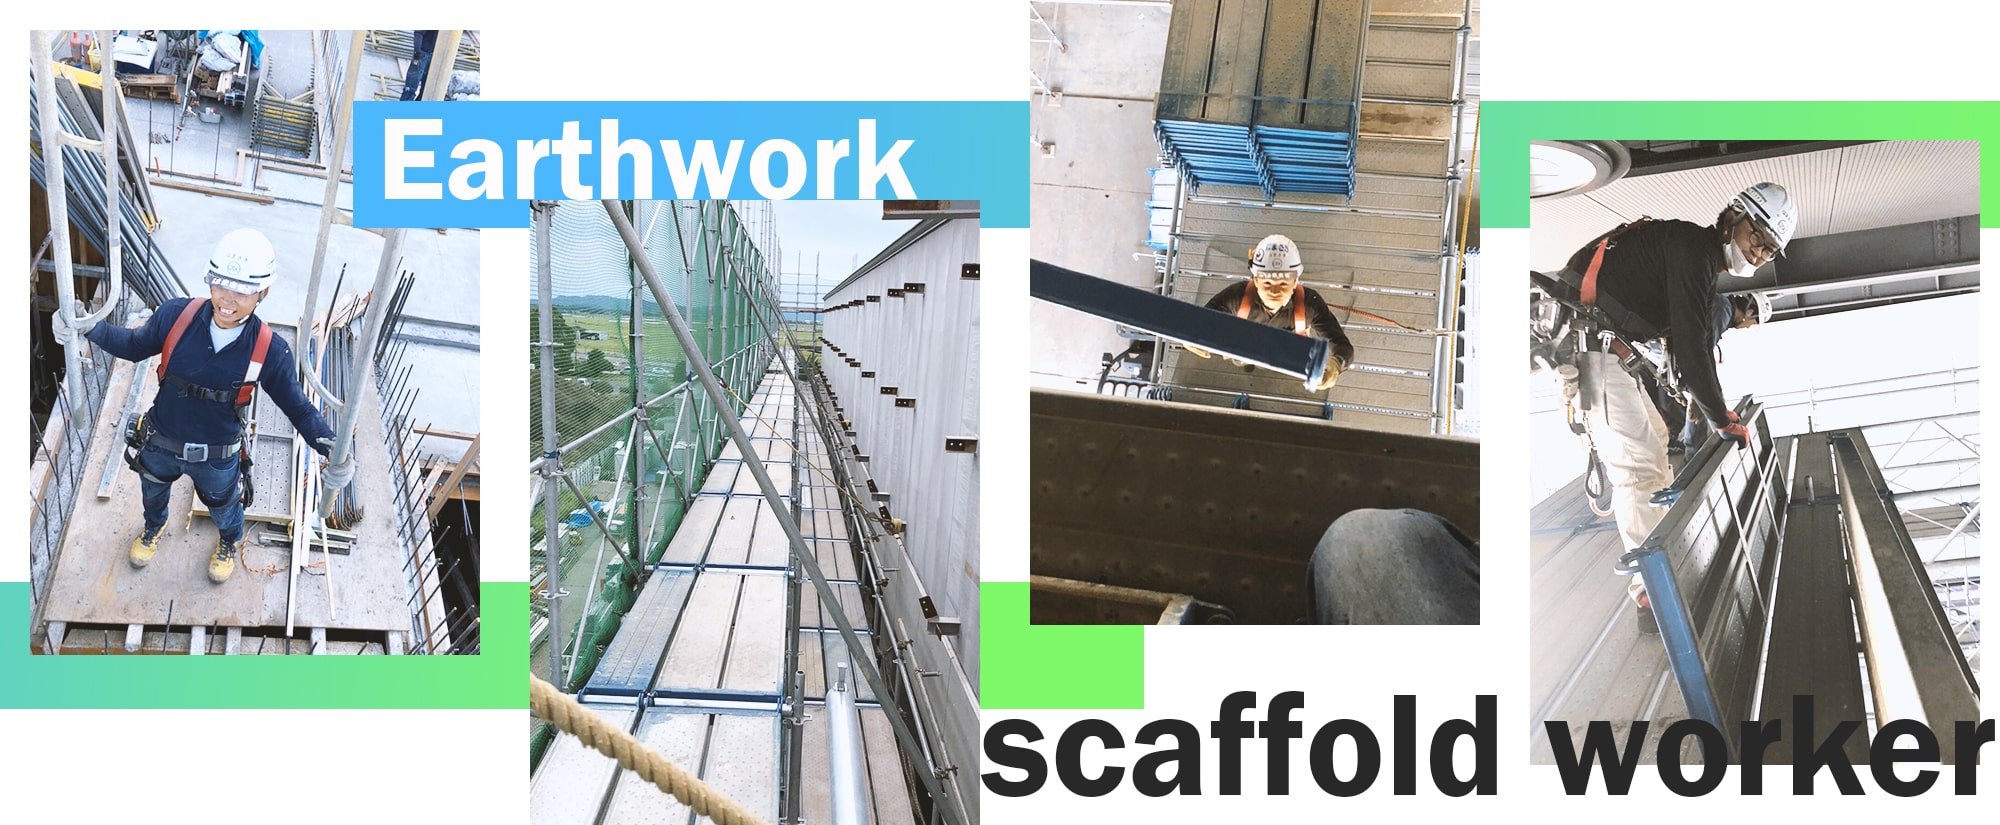 Earthwork scaffold worker